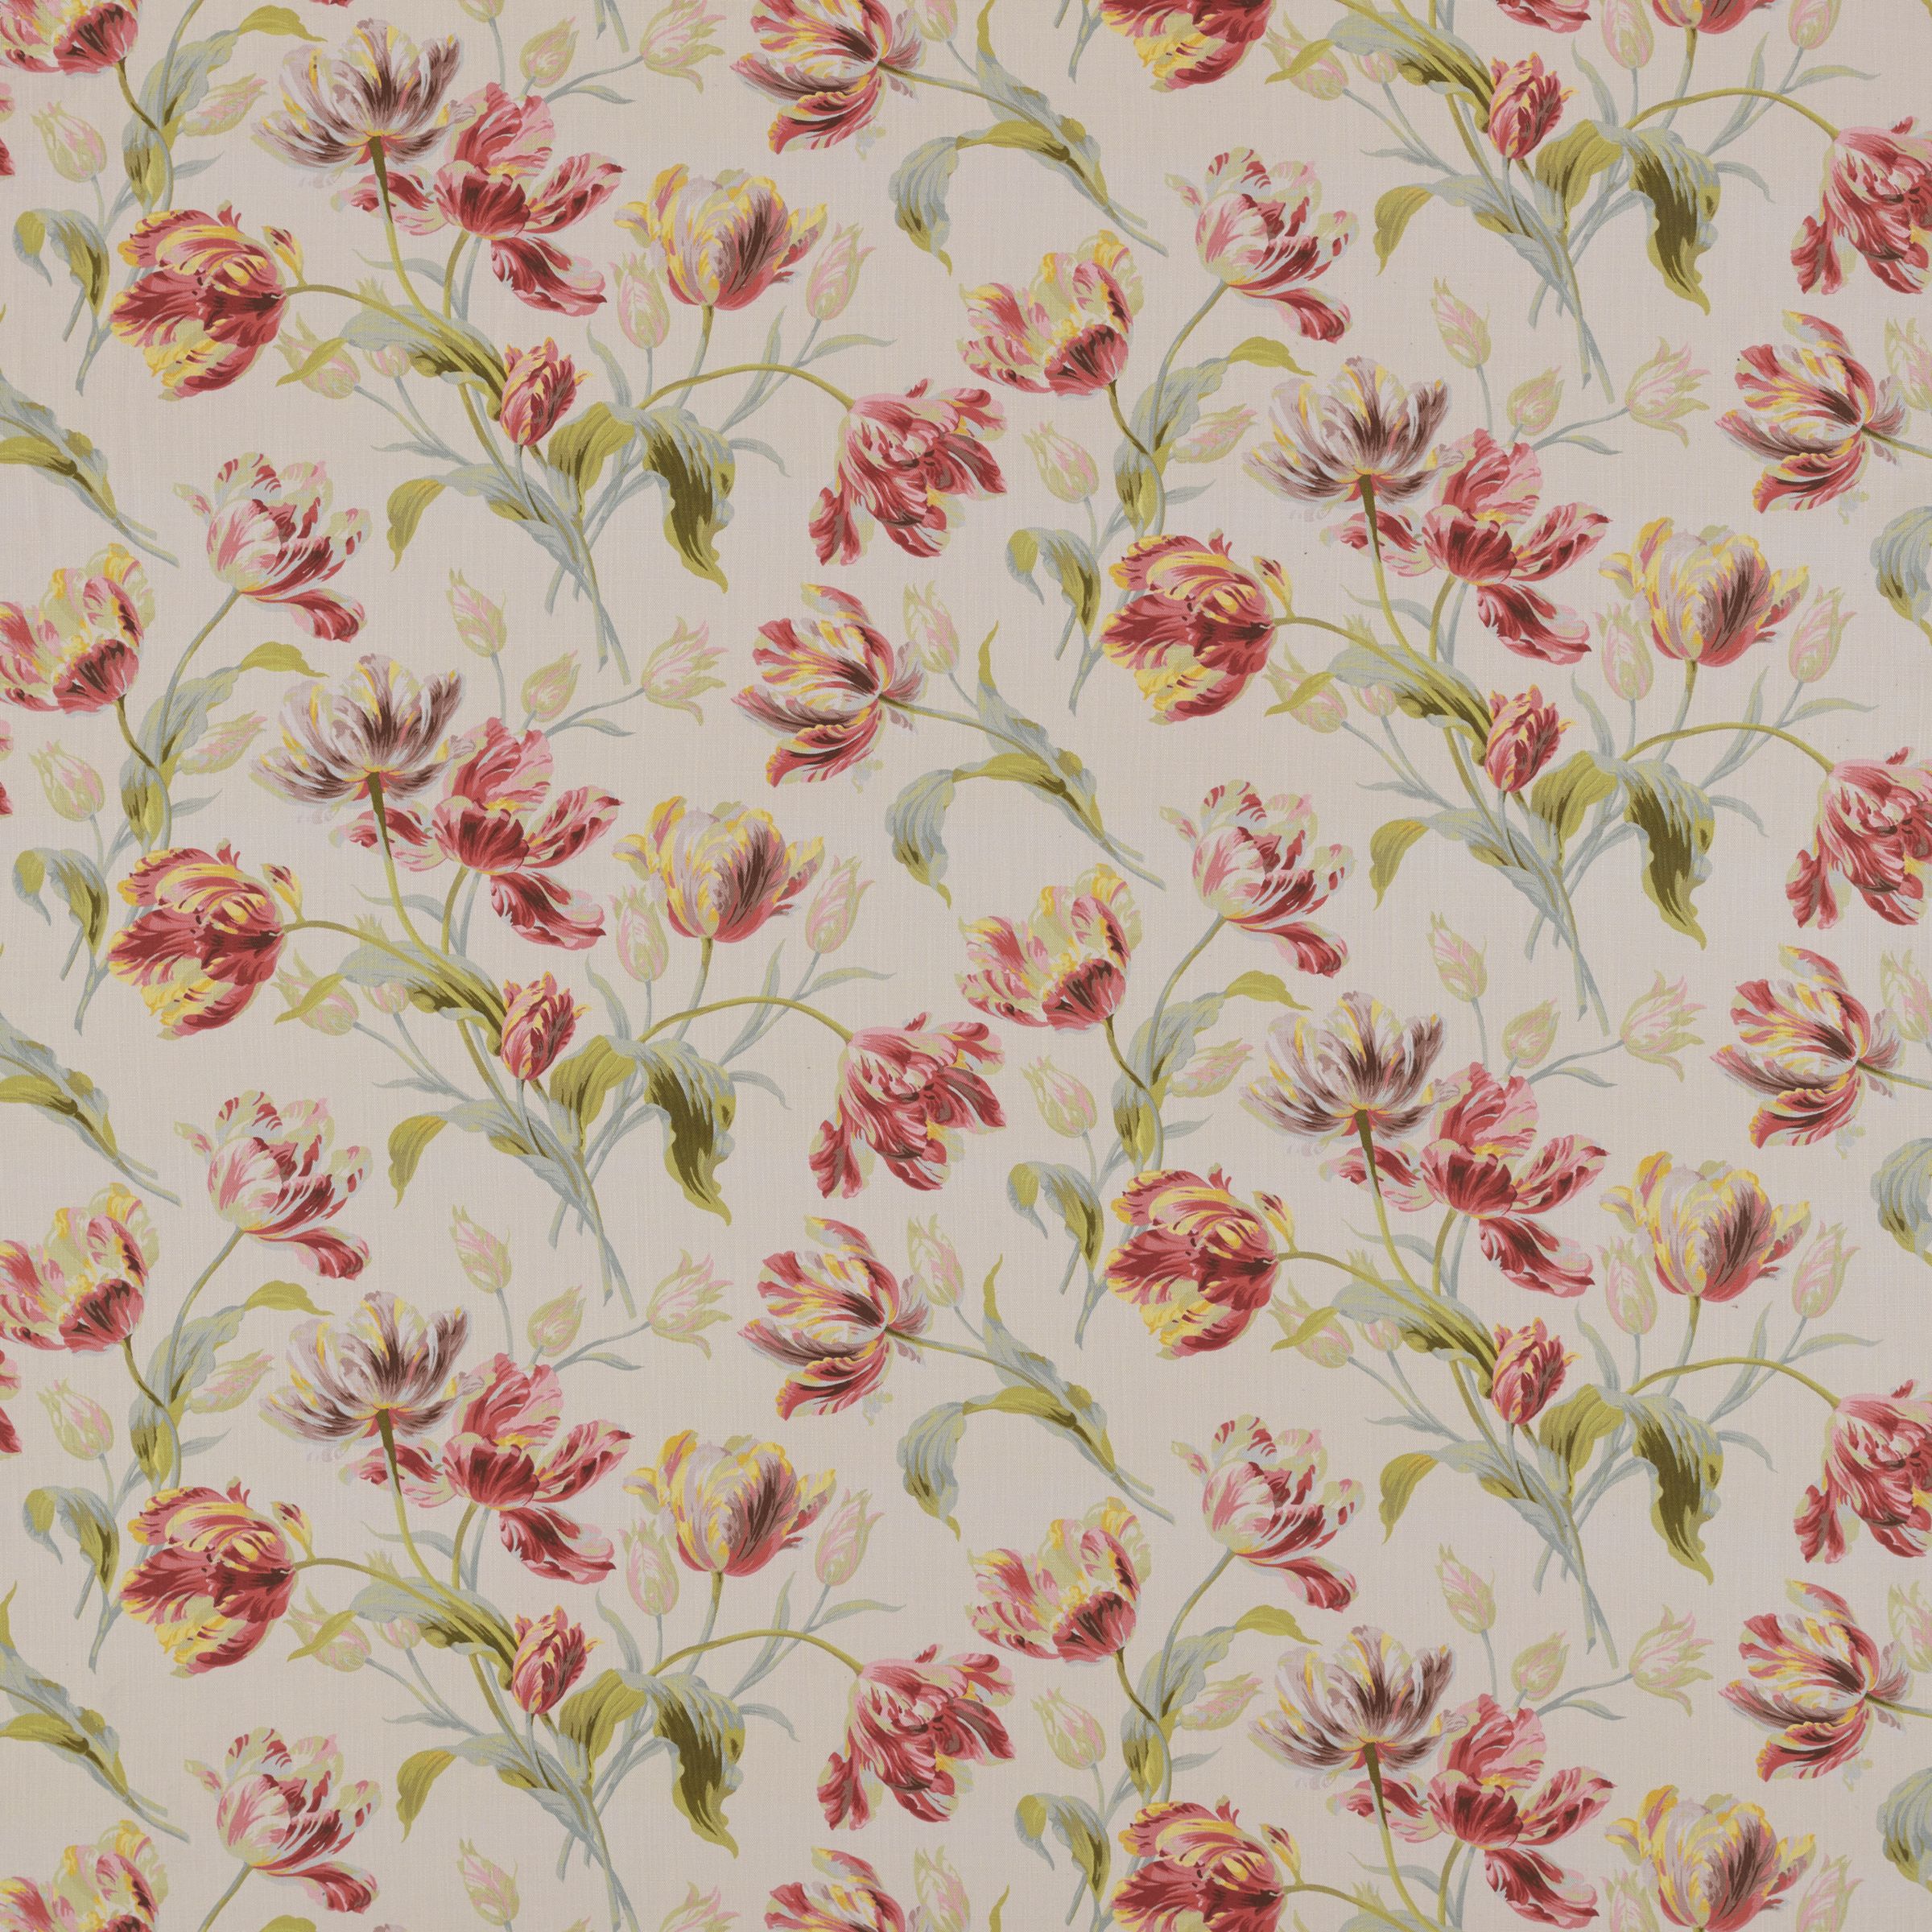 Laura Ashley Gosford Meadow Furnishing Fabric, Cranberry